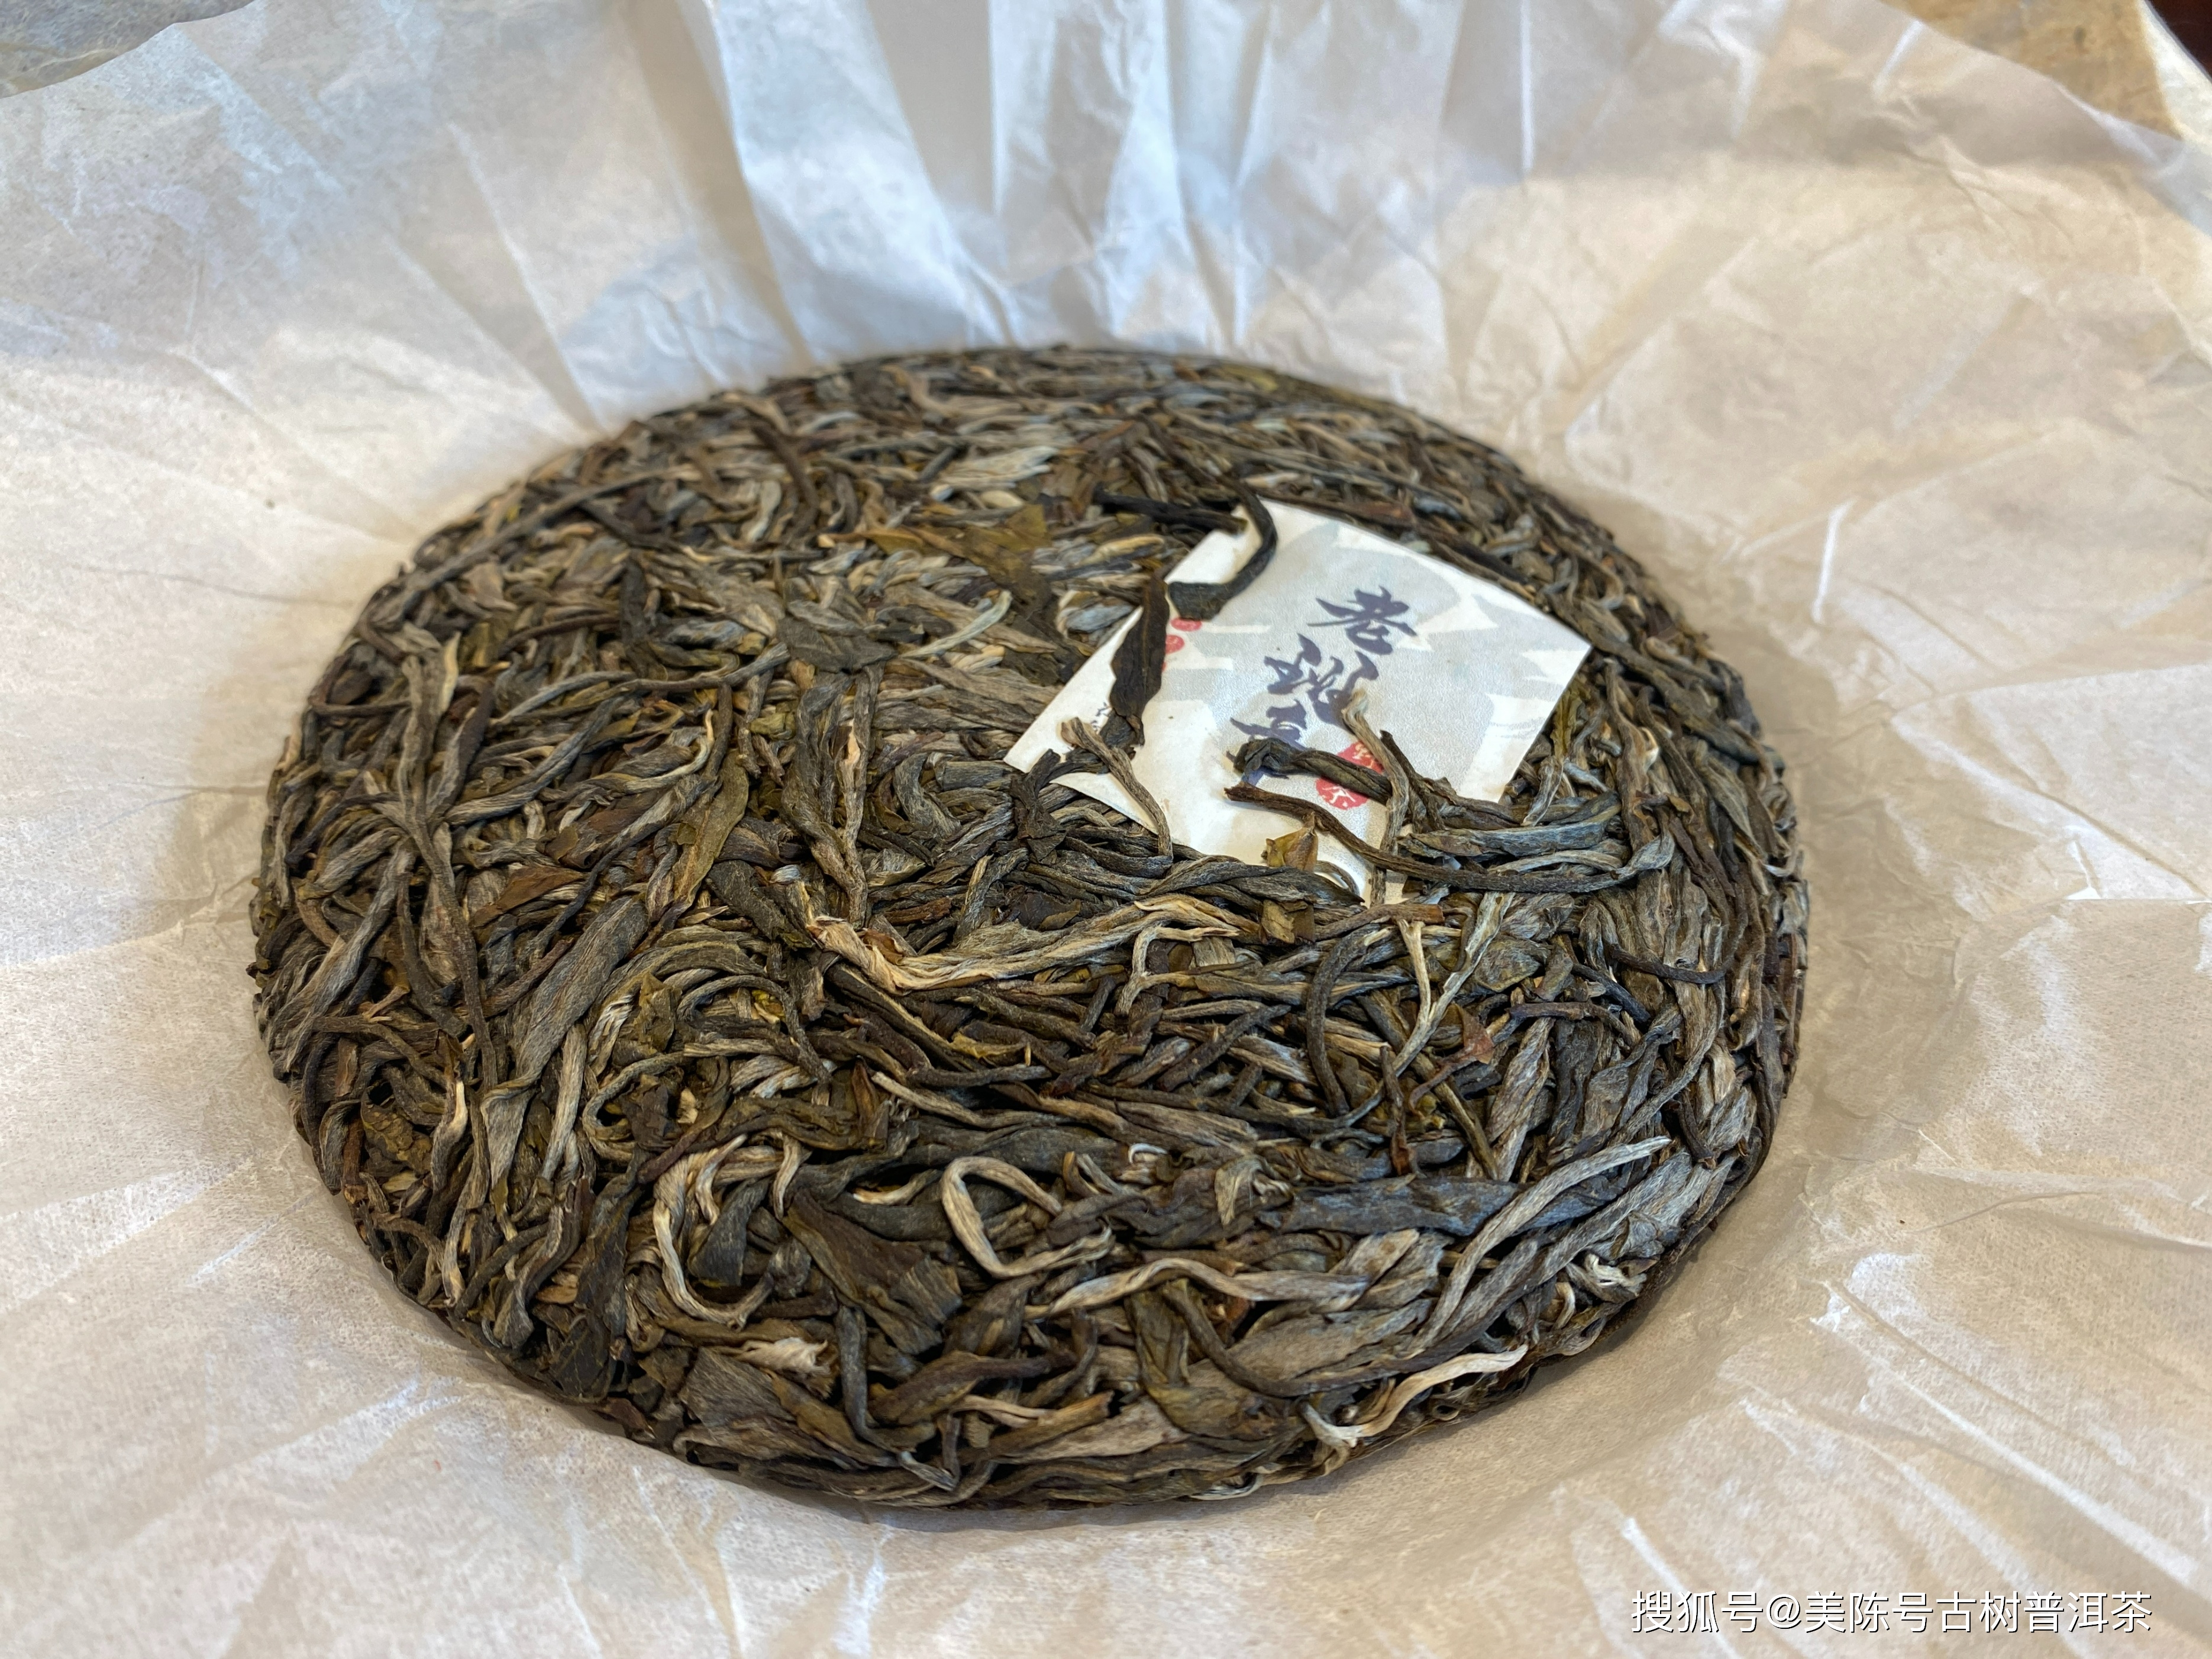 普洱茶散装与包装茶叶的区别及其选购方法